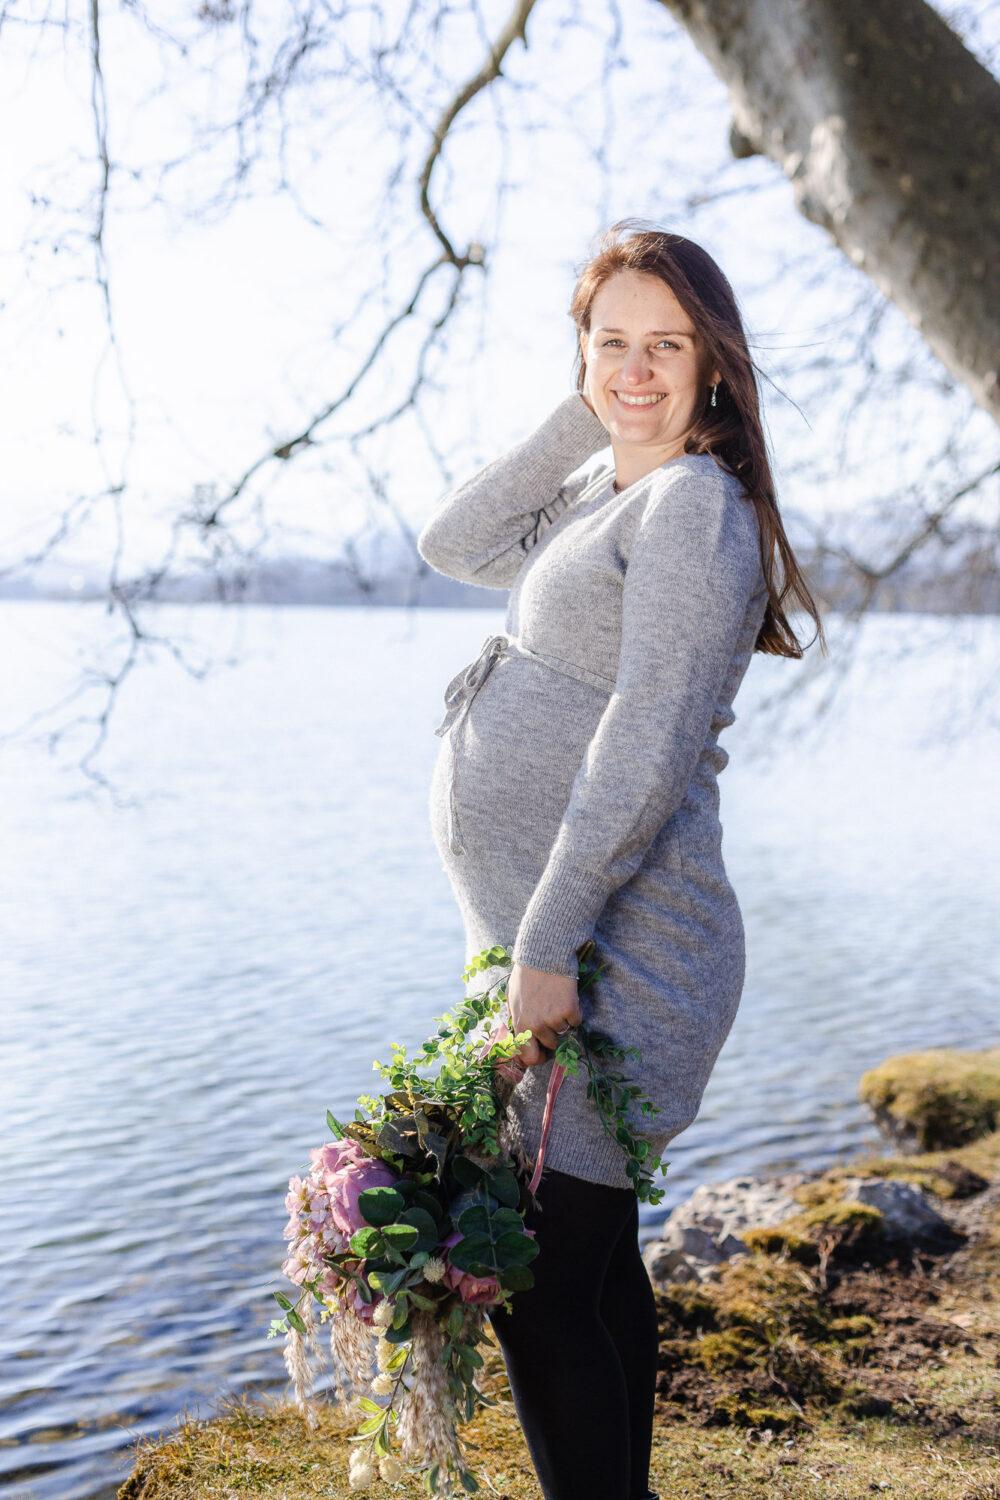 Winterliches Schwangerschaft Fotoshooting in Cham, Kanton Zug, Schweiz